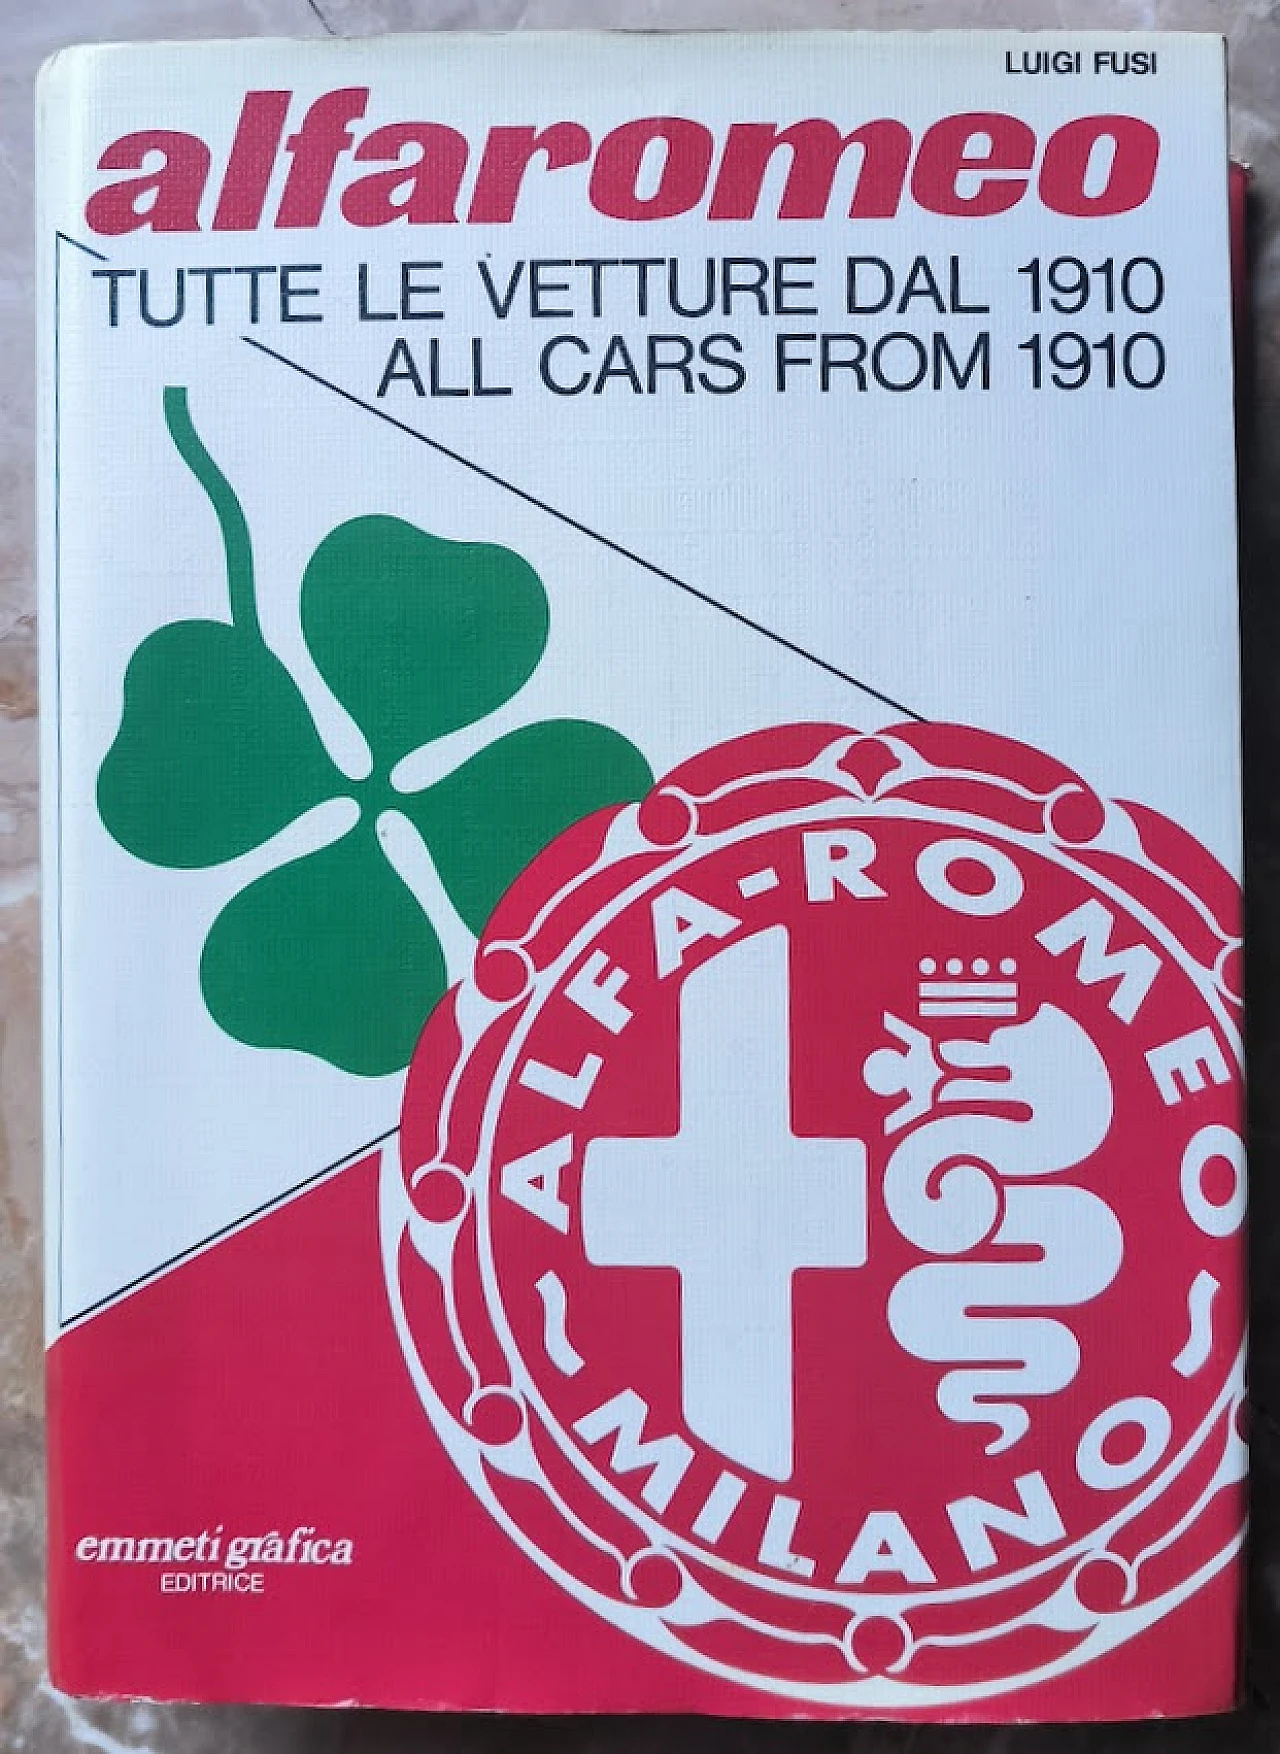 Alfaromeo - Tutte le vetture dal 1910 book by Luigi Fusi, 1978 7